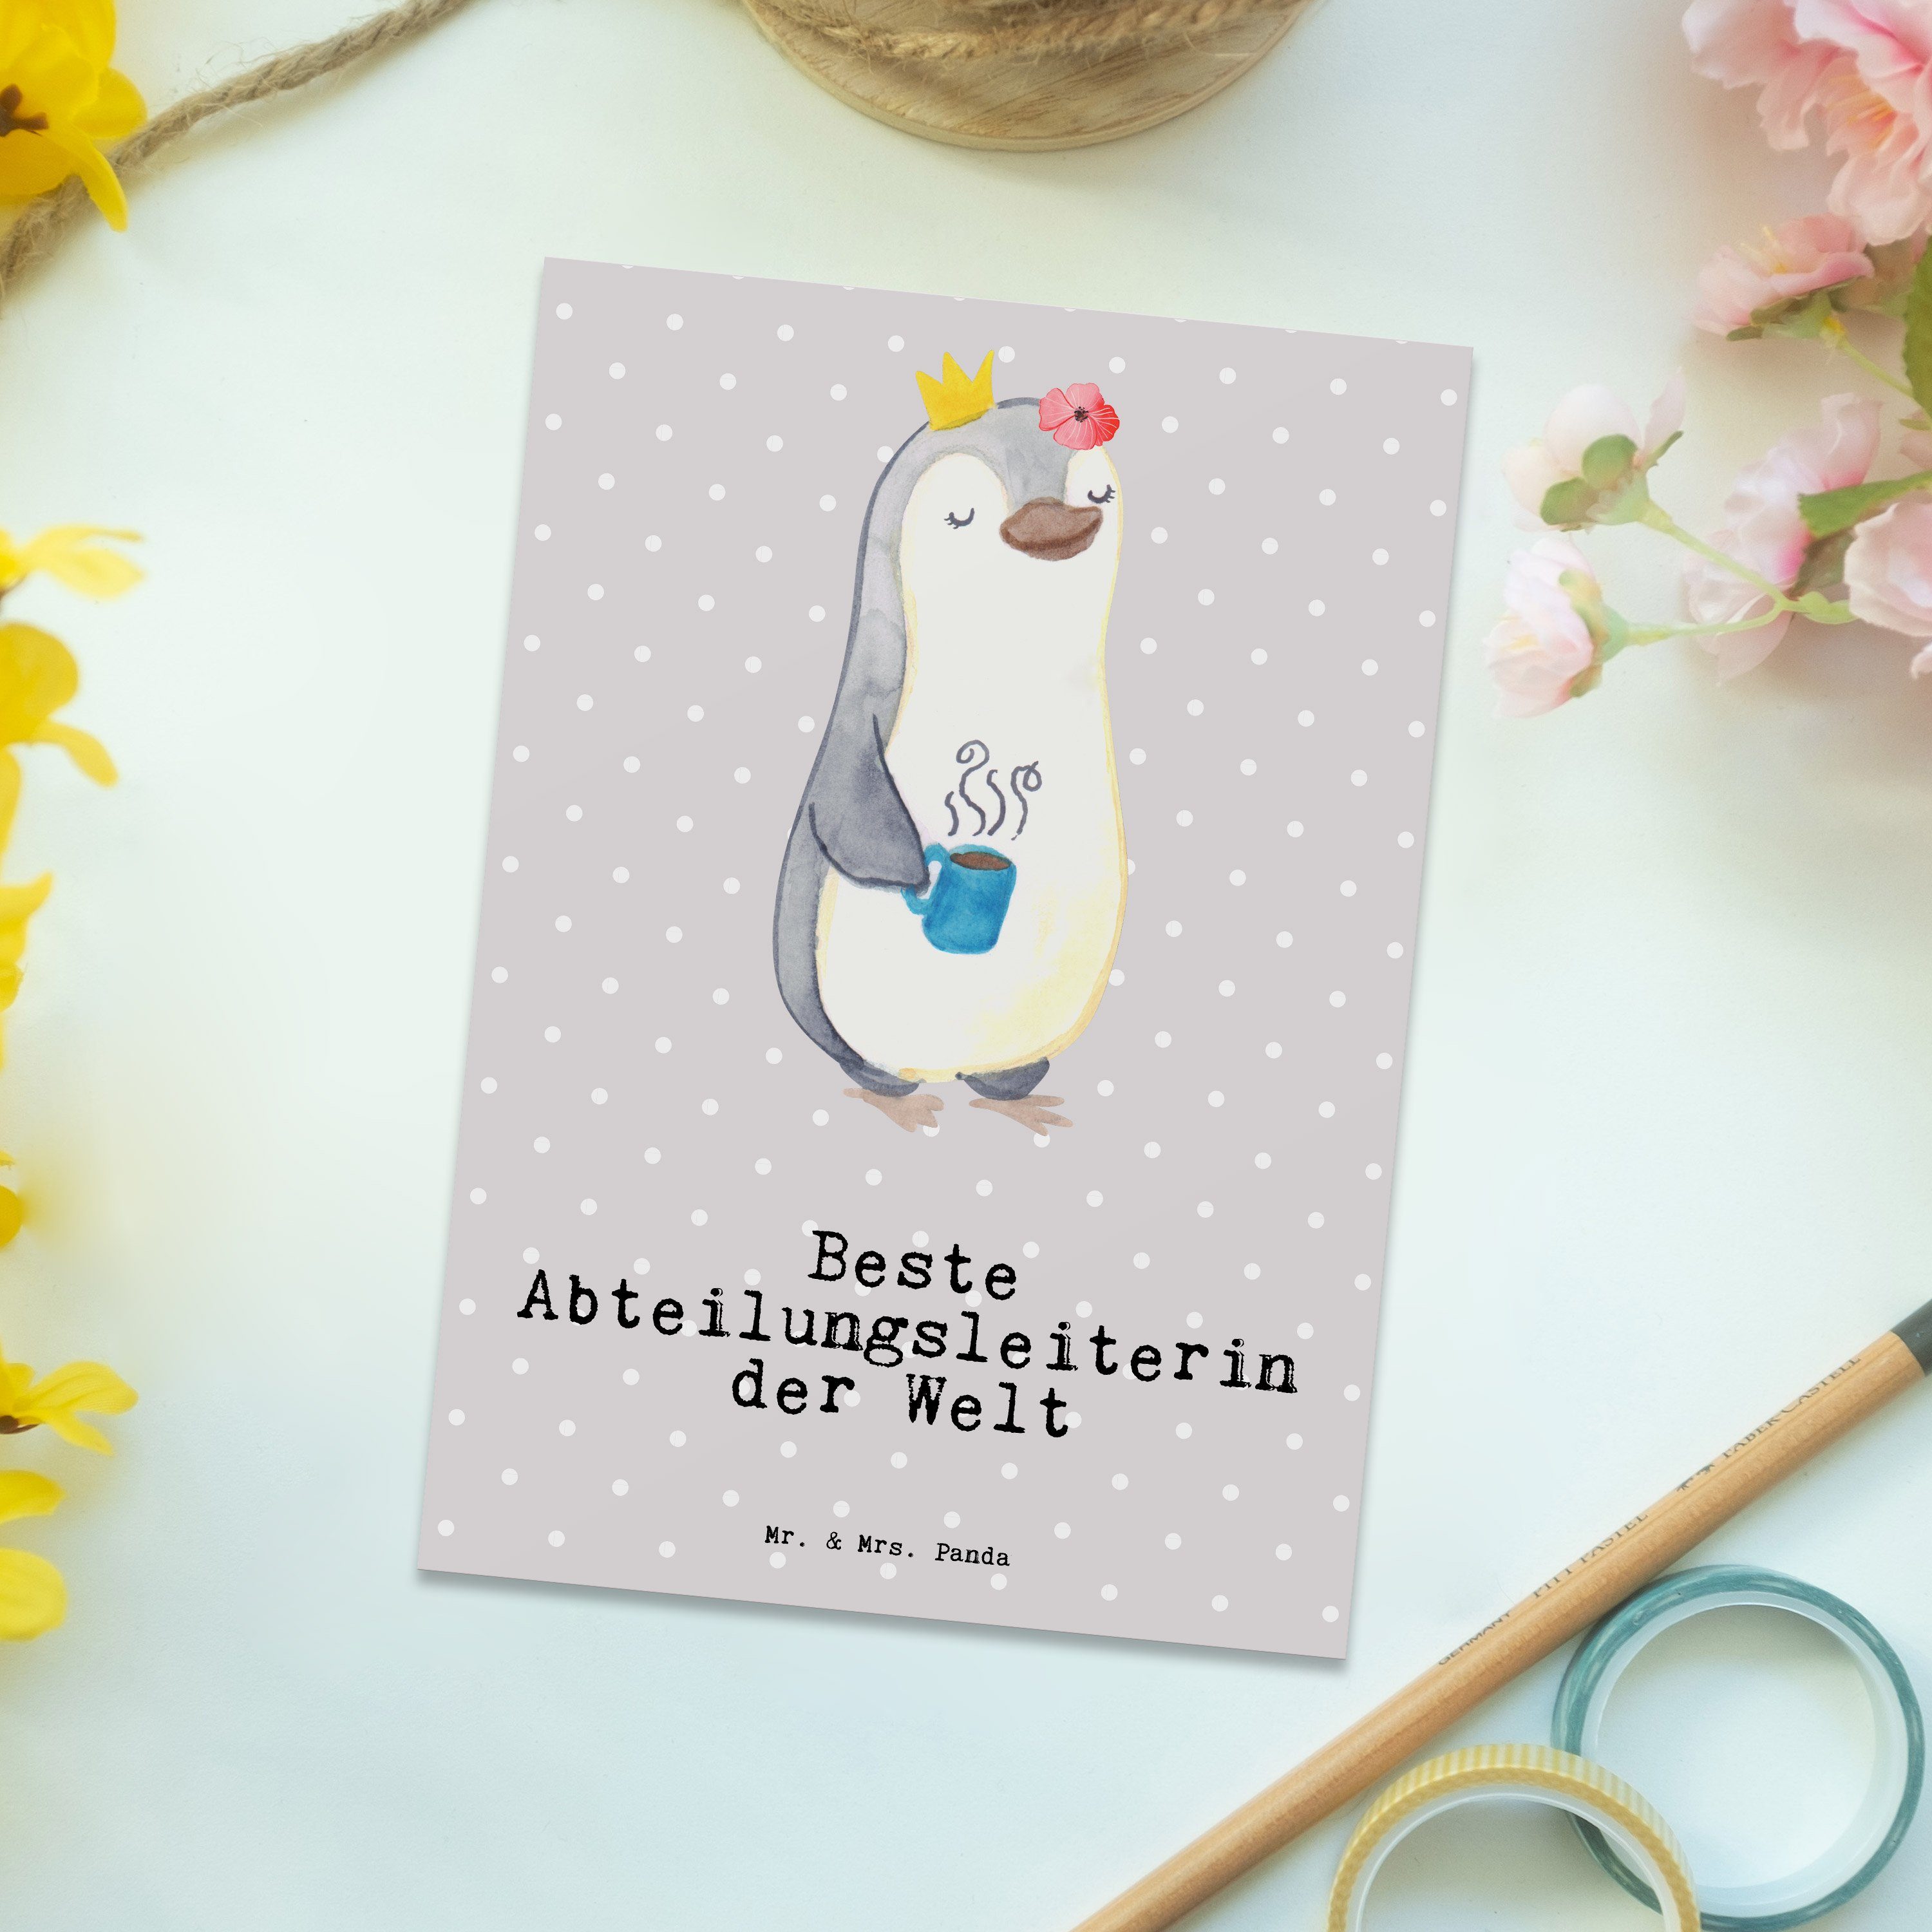 & Mr. Mrs. Abteilungsleiterin Welt der - Postkarte Panda Beste Grau Pastell Pinguin Geschenk -